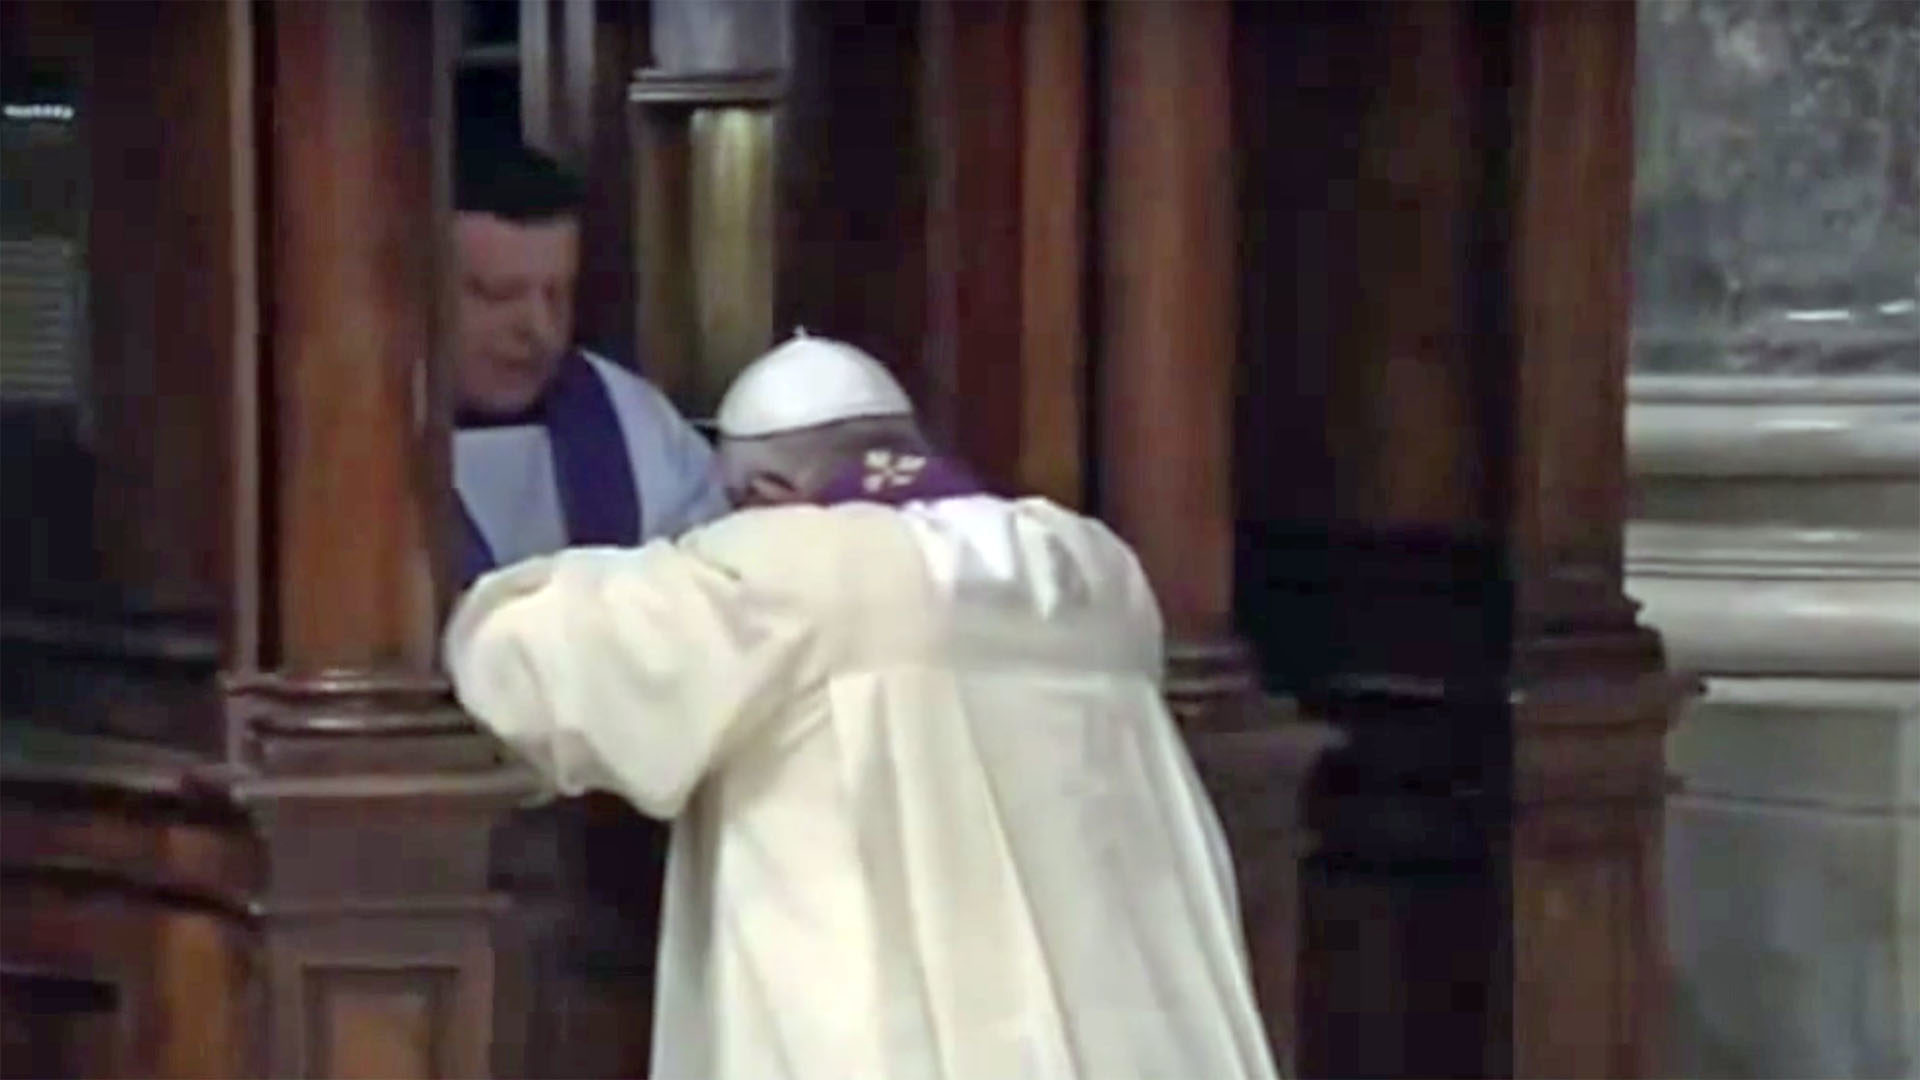 Le pape se confesse auprès du premier prêtre venu (Capture d'écran: youtube.com)